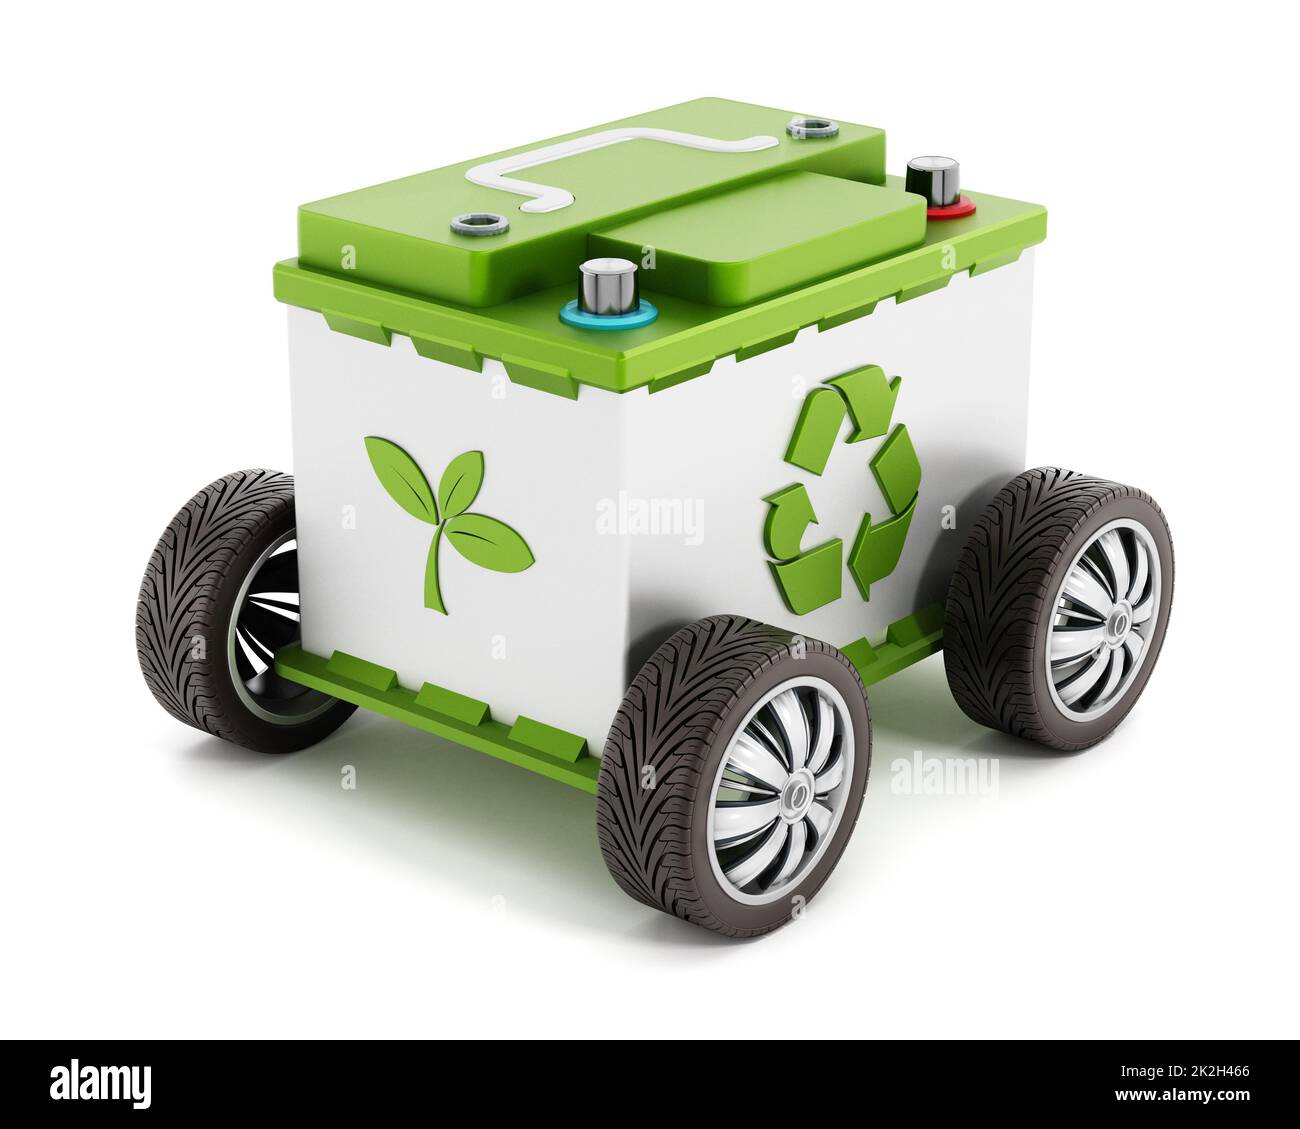 Batteria per auto riciclabile con pneumatici Foto Stock